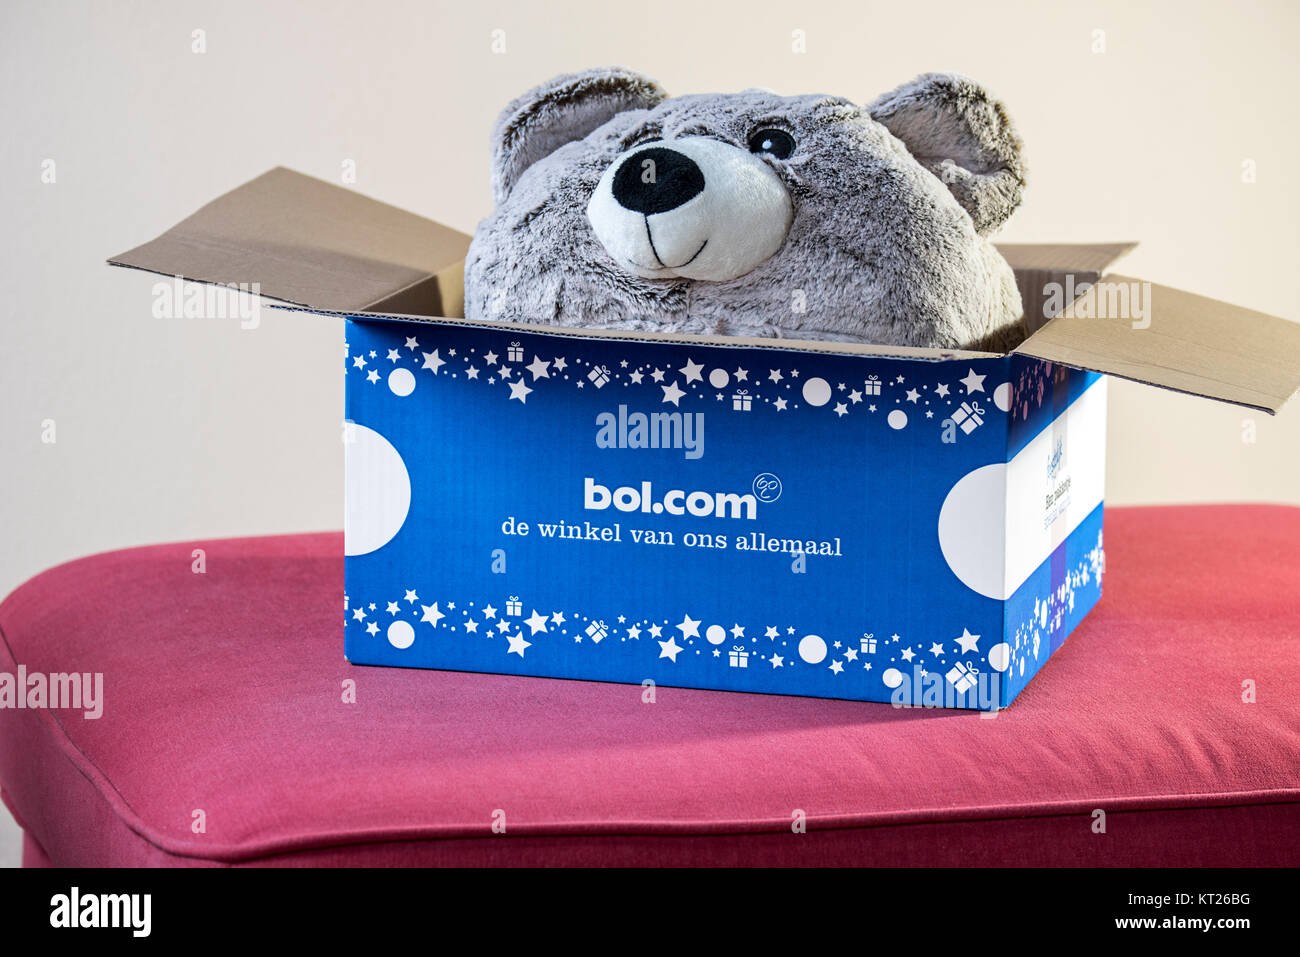 Oso de Peluche Teddy bear / presentes en abrir la caja de cartón comprada en bol.com, webshop líder en los Países Bajos para libros, juguetes y electrónica Foto de stock